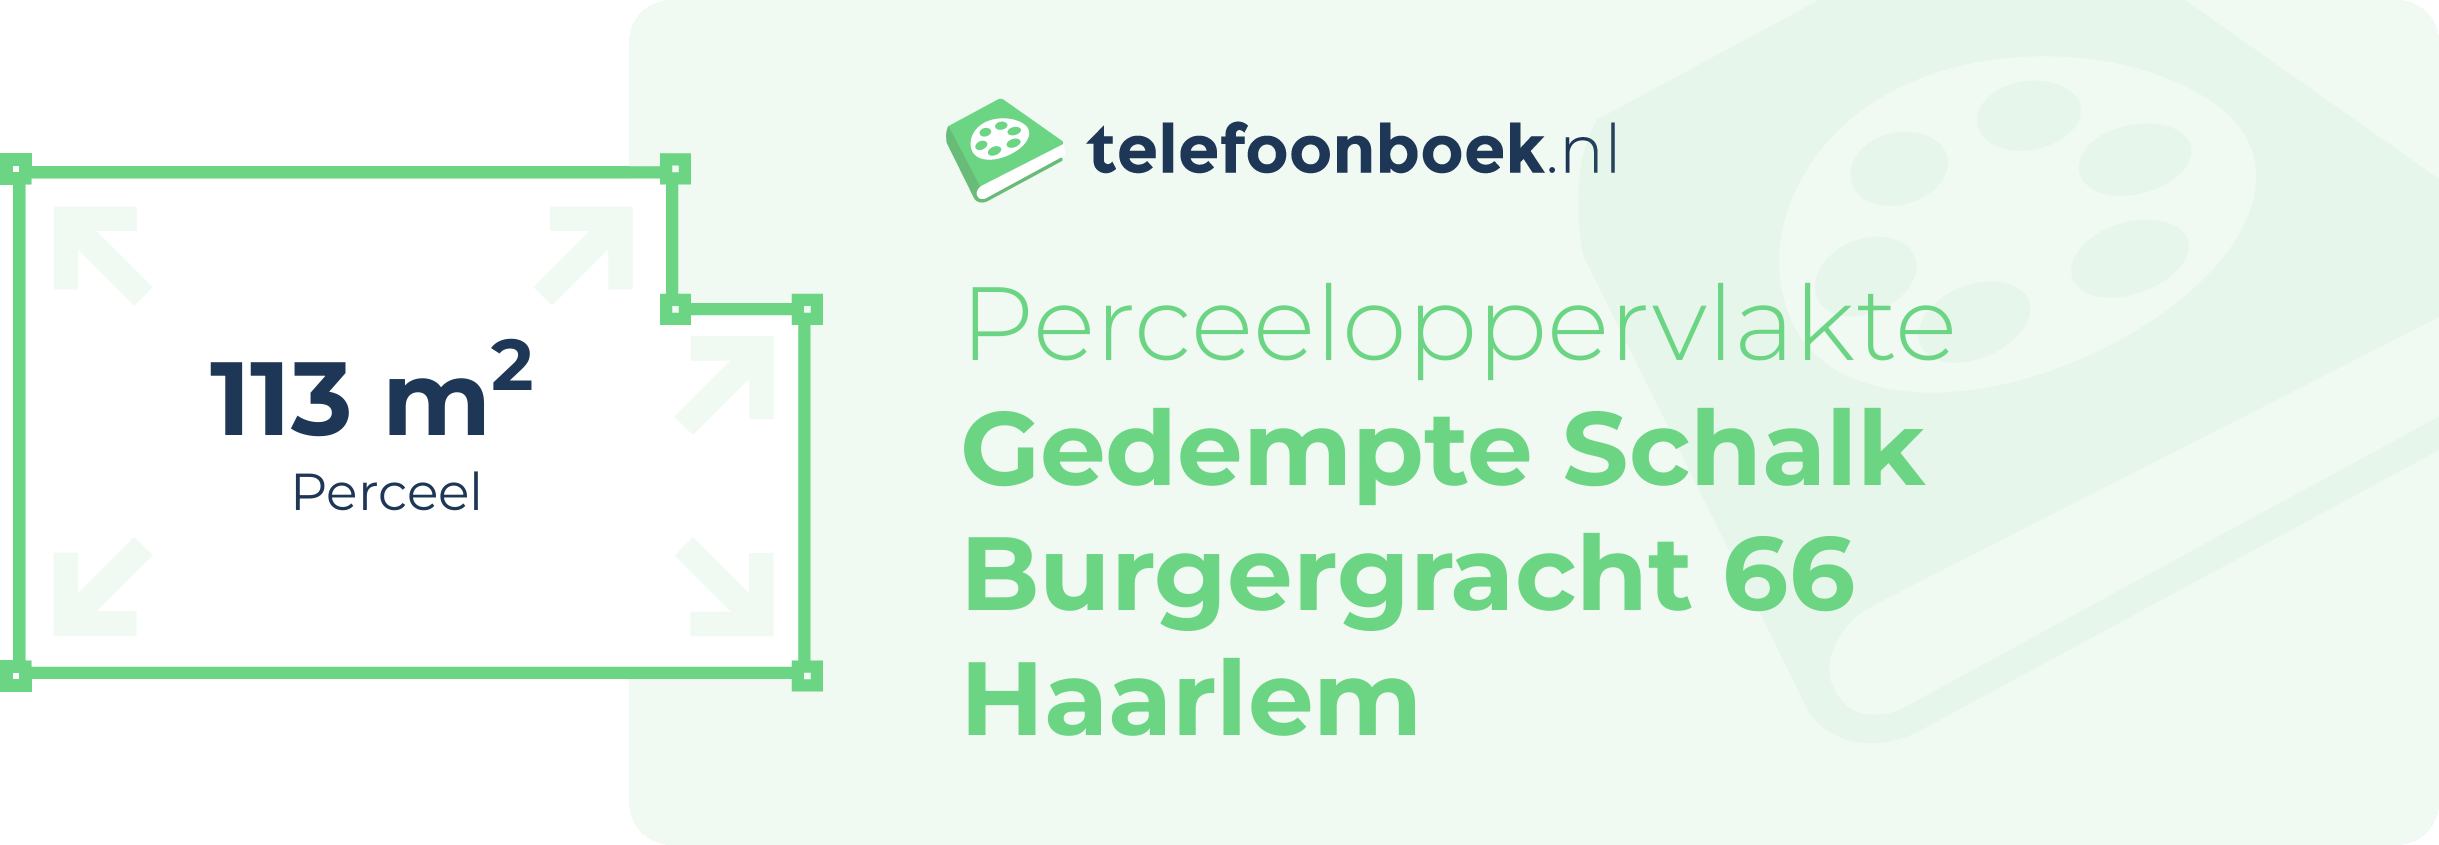 Perceeloppervlakte Gedempte Schalk Burgergracht 66 Haarlem